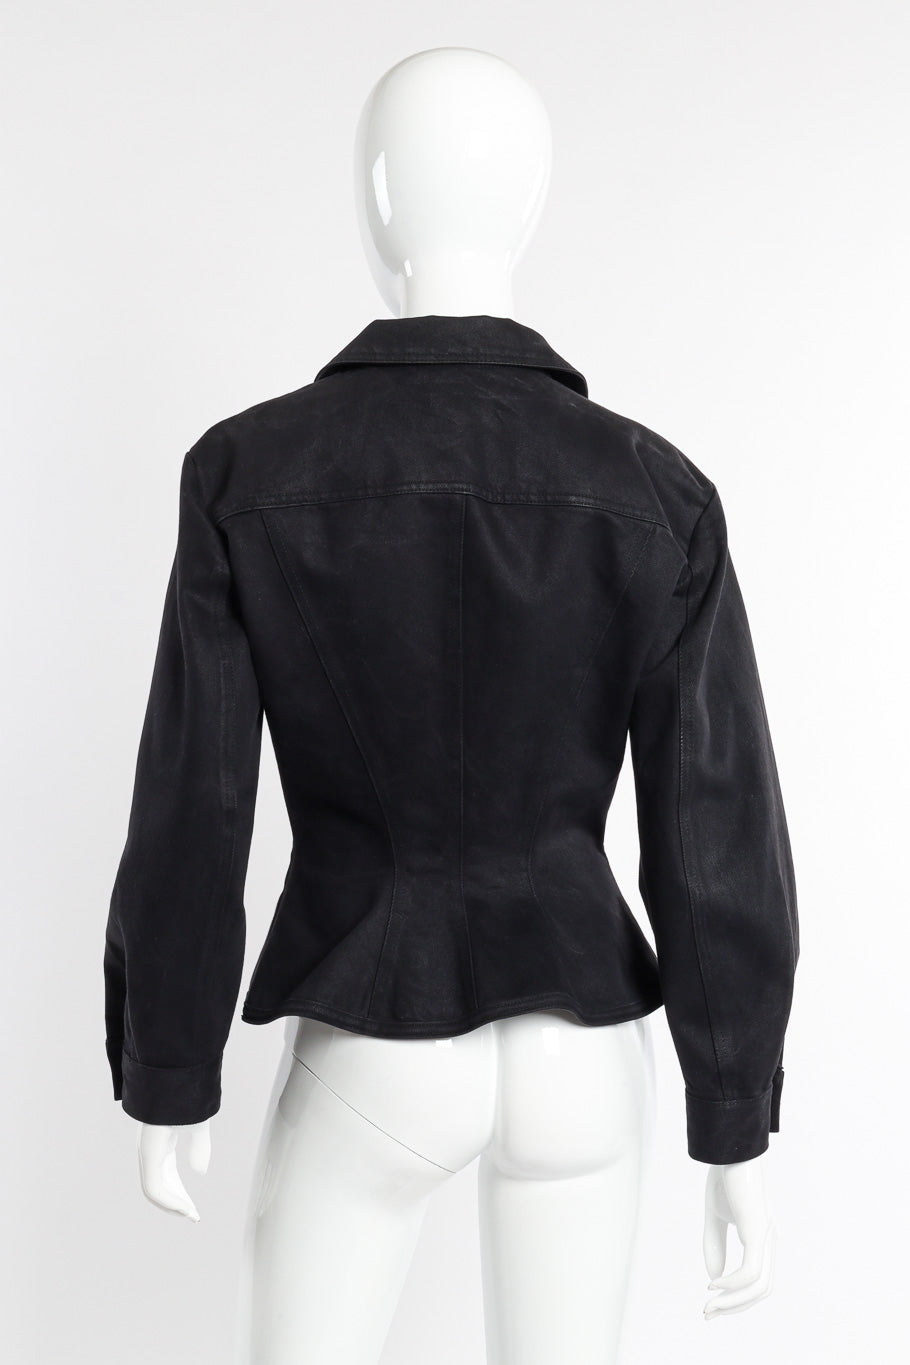 Junior Gaultier Denim Peplum Jacket back on mannequin @recessla